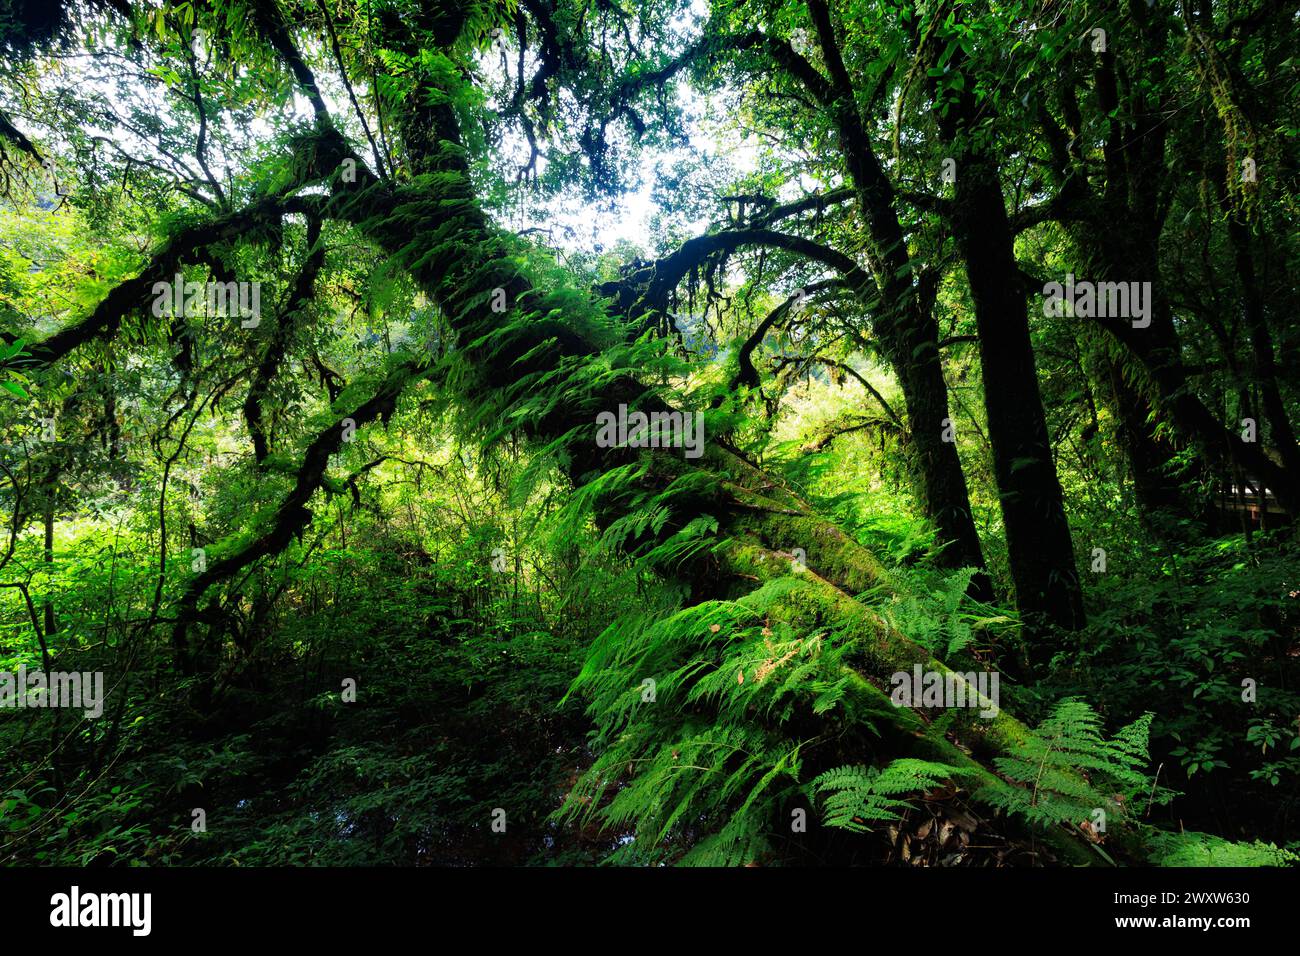 Un albero con muschio che cresce su di esso nella lussureggiante foresta verde di Doi Inthanon, Thailandia. Il muschio copre il tronco e i rami dell'albero, dandogli un carattere naturale Foto Stock